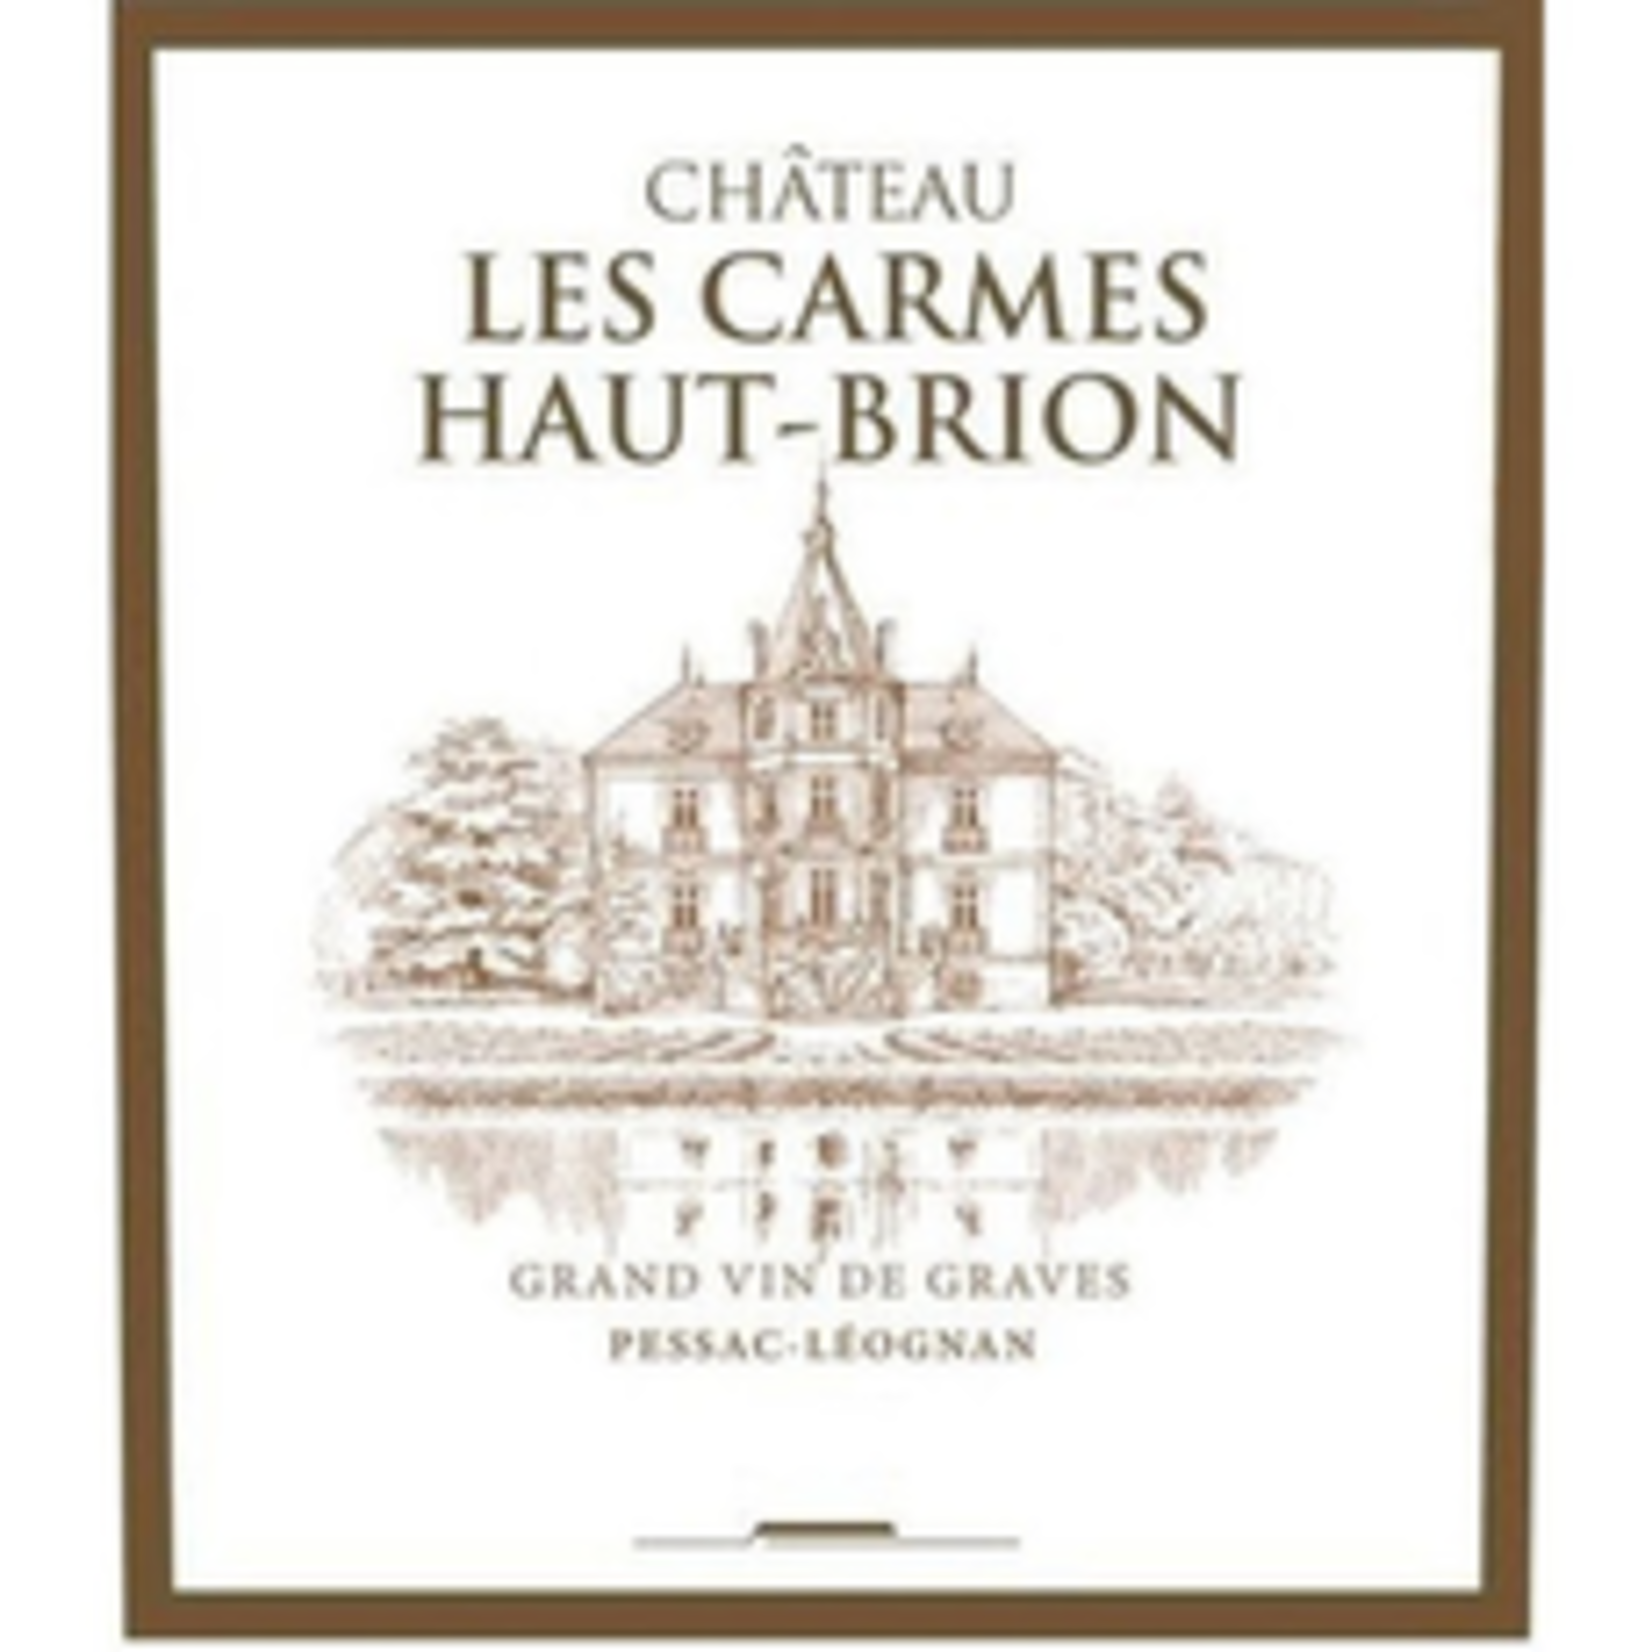 Wine Chateau Les Carmes Haut-Brion Pessac-Léognan 2018